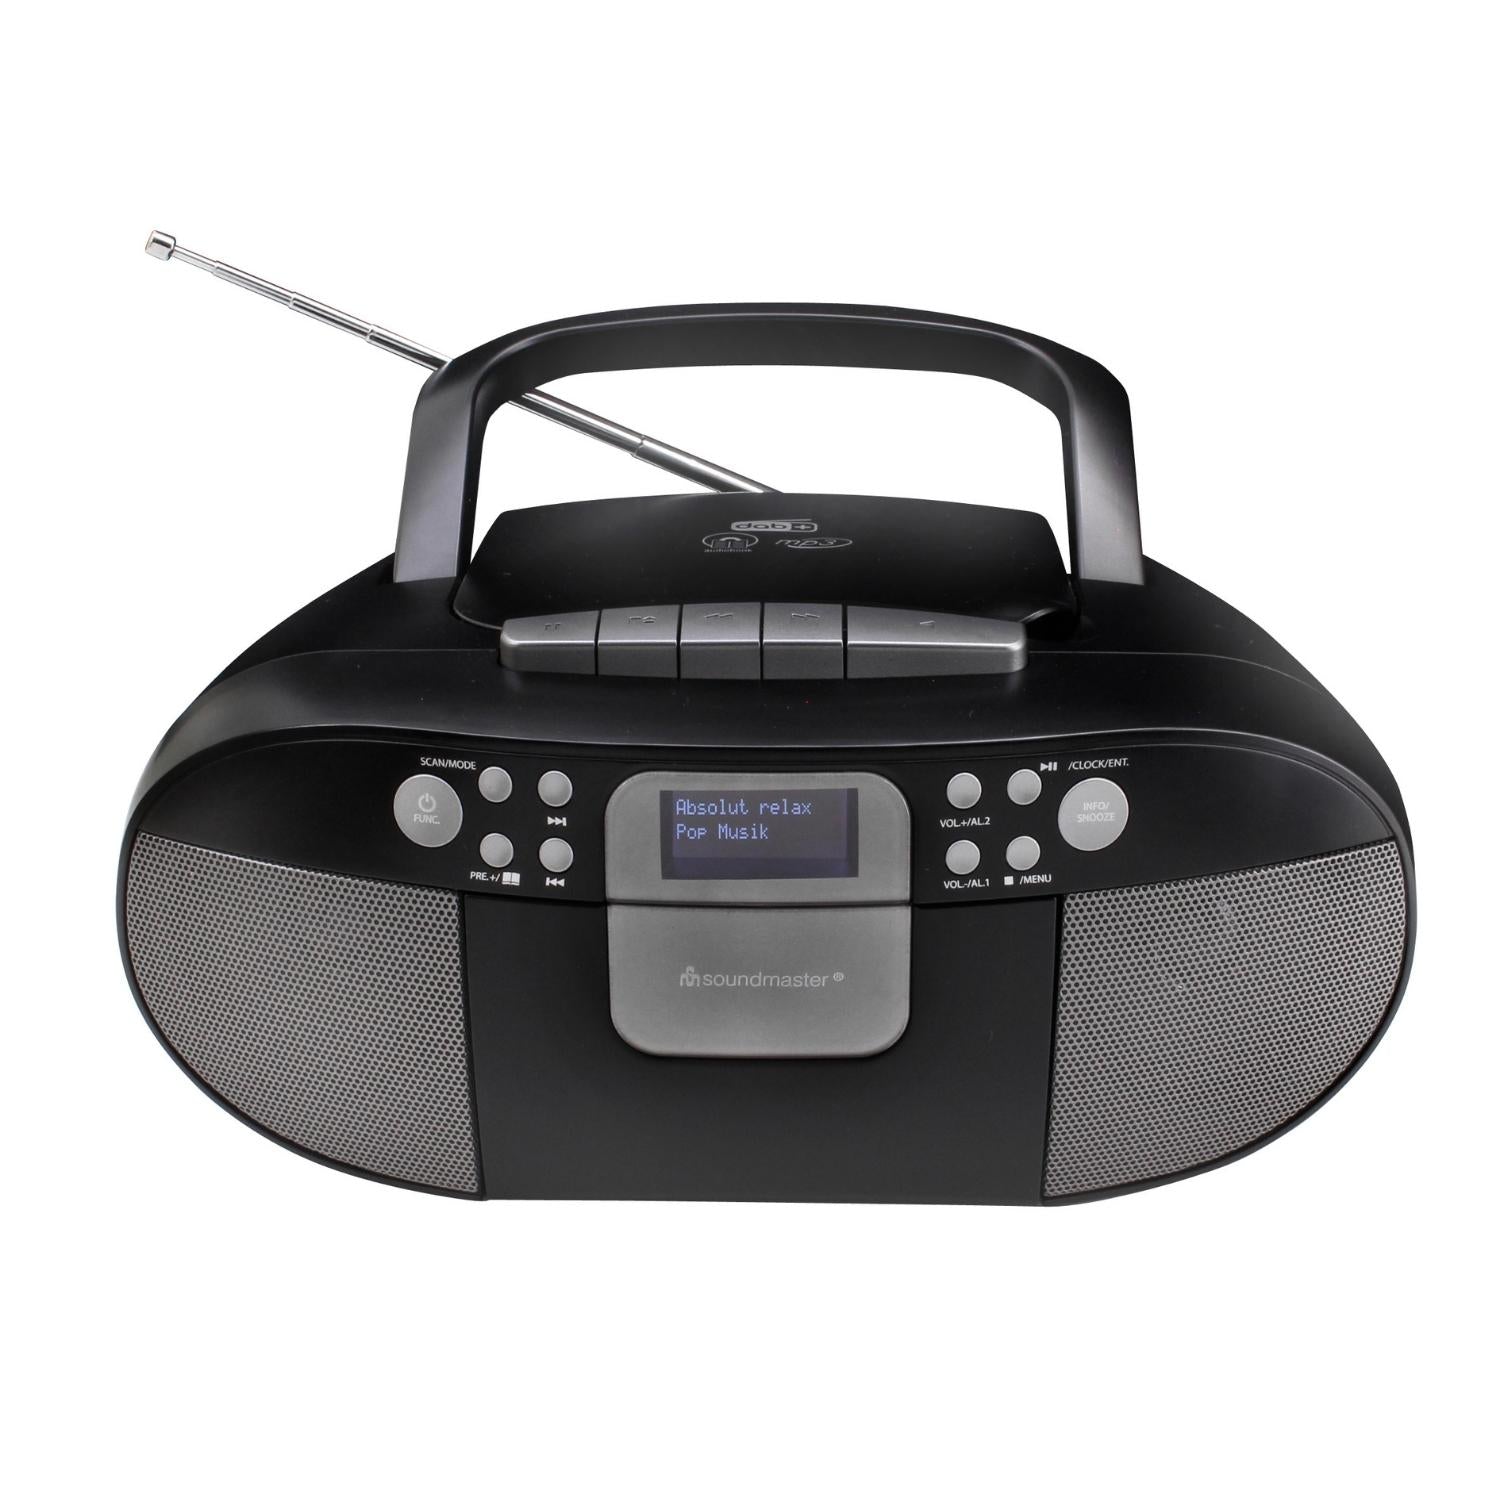 Soundmaster SCD7800SW Boombox DAB+ CD enregistreur cassette MP3 avec fonction réveil USB, fonction livre audio